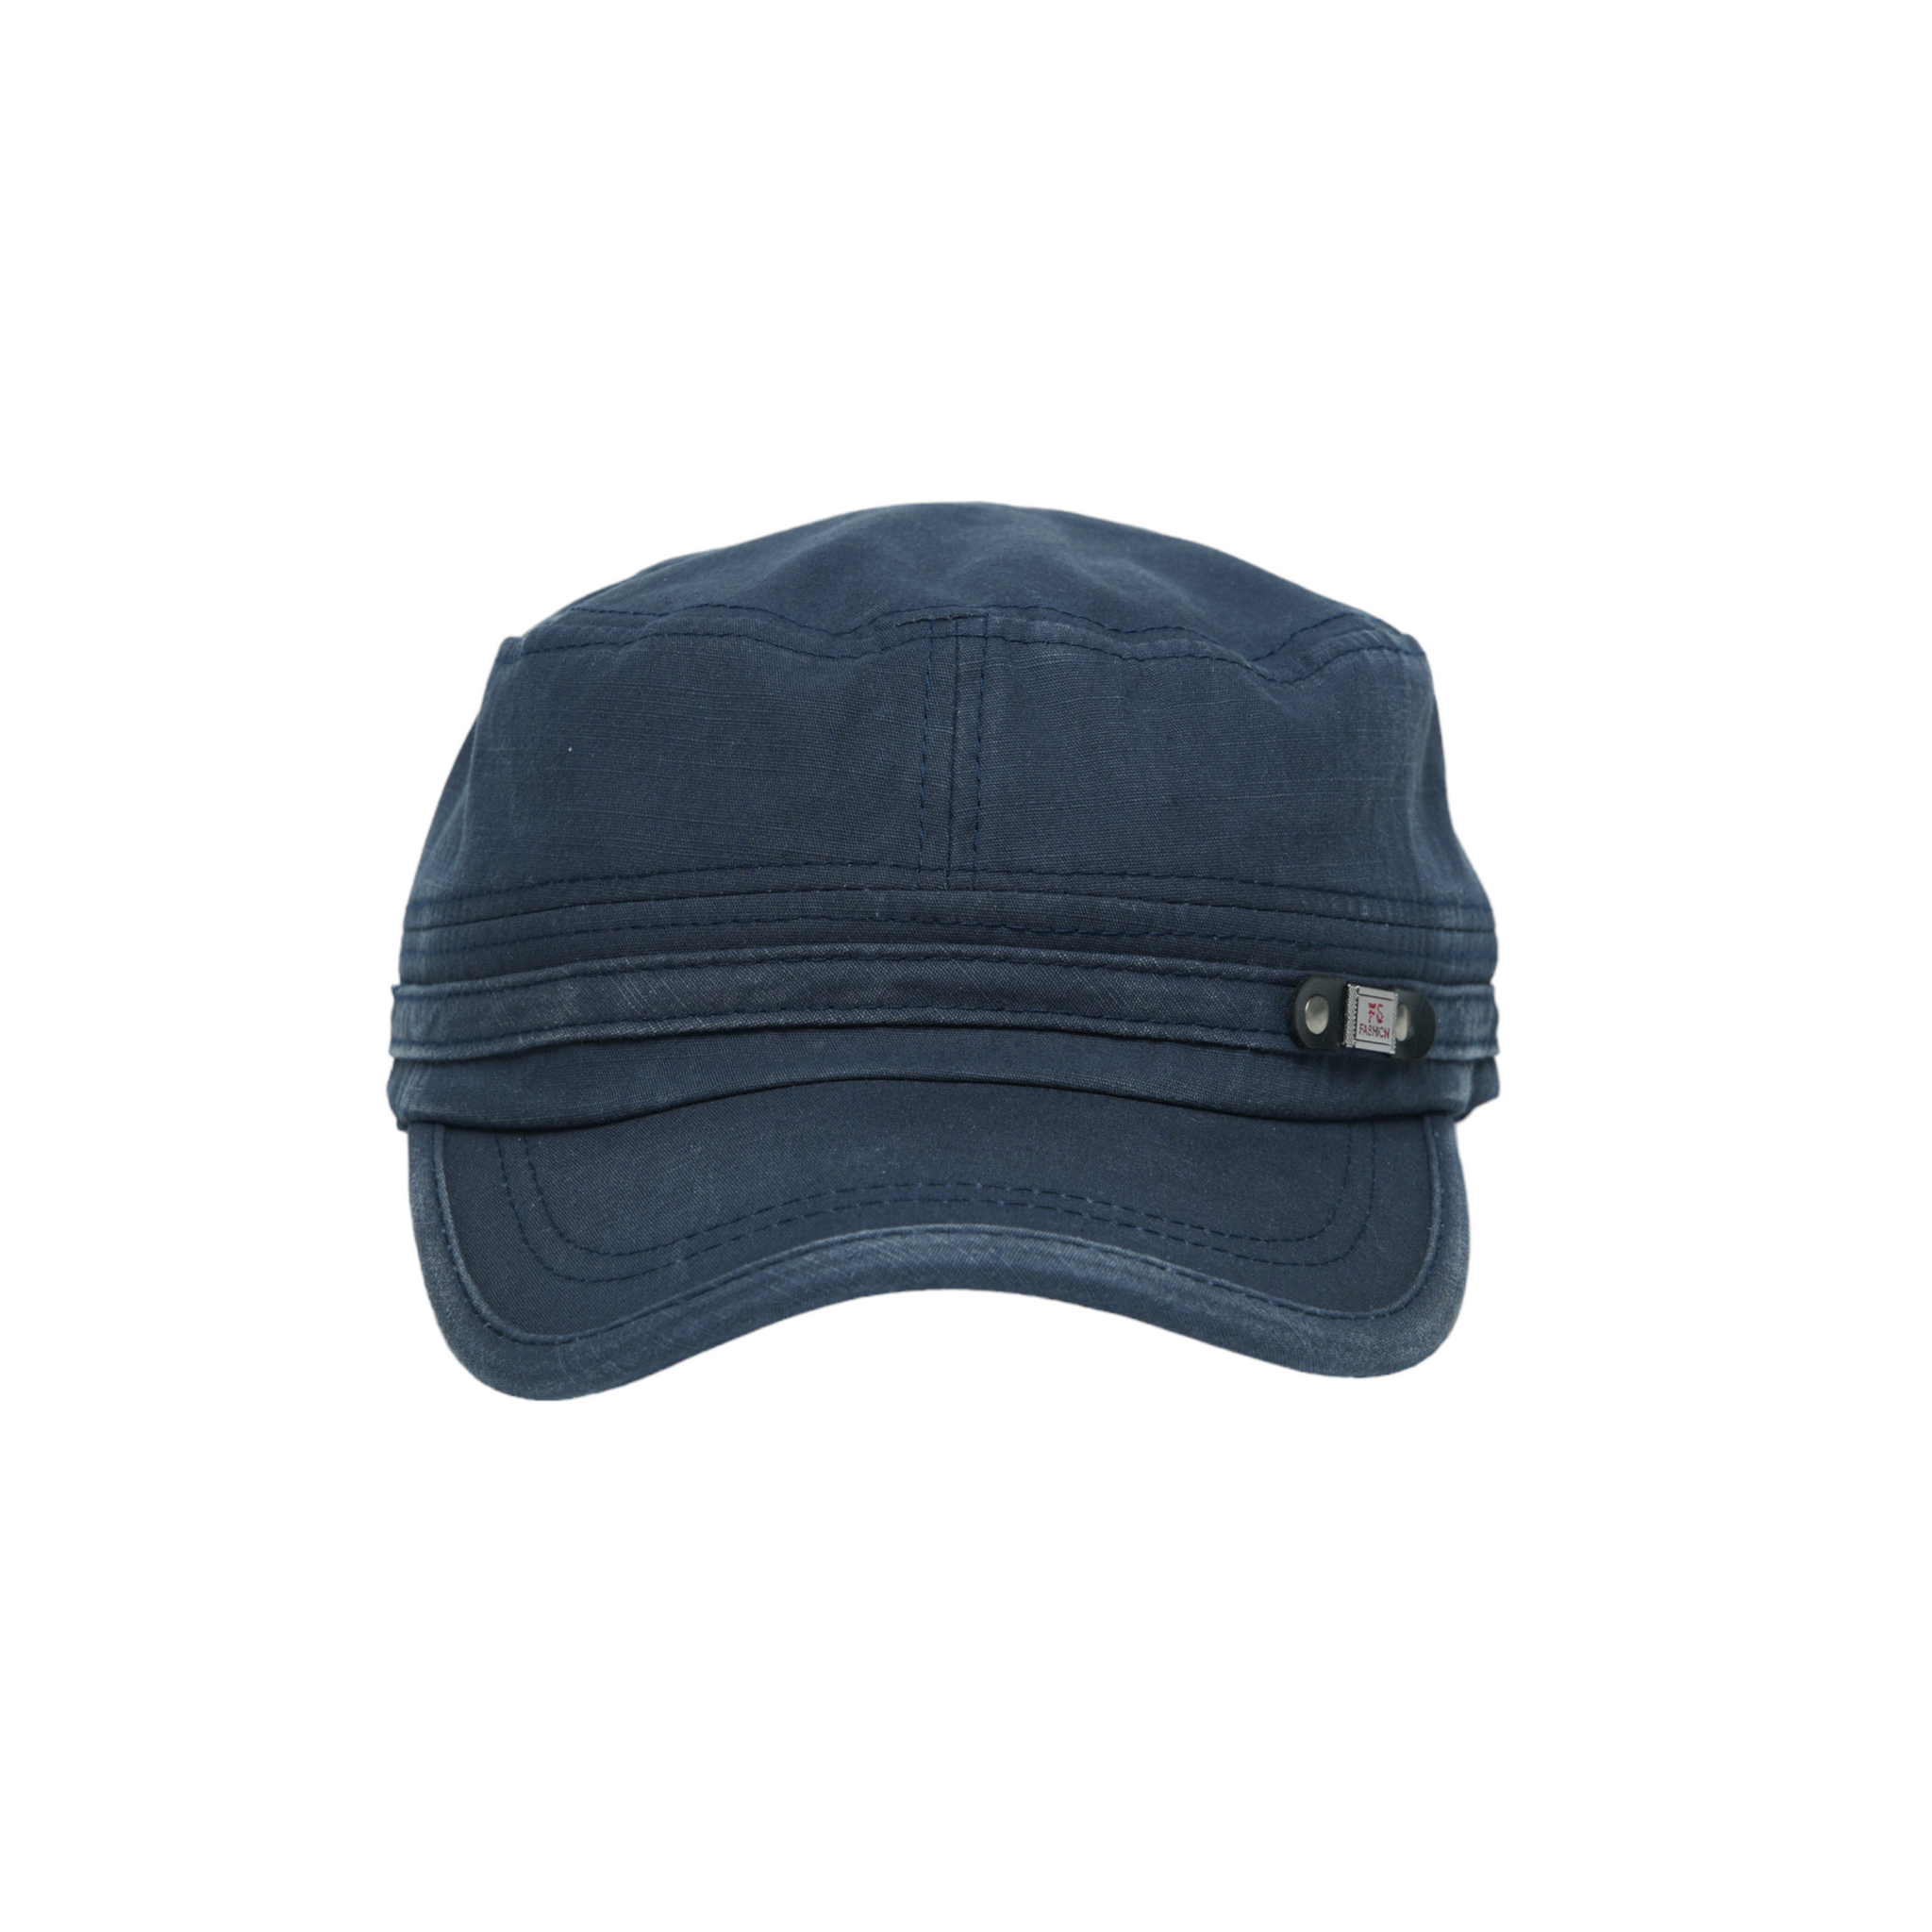 Chokore Classic Flat Top Cap with Curved Brim (Blue)